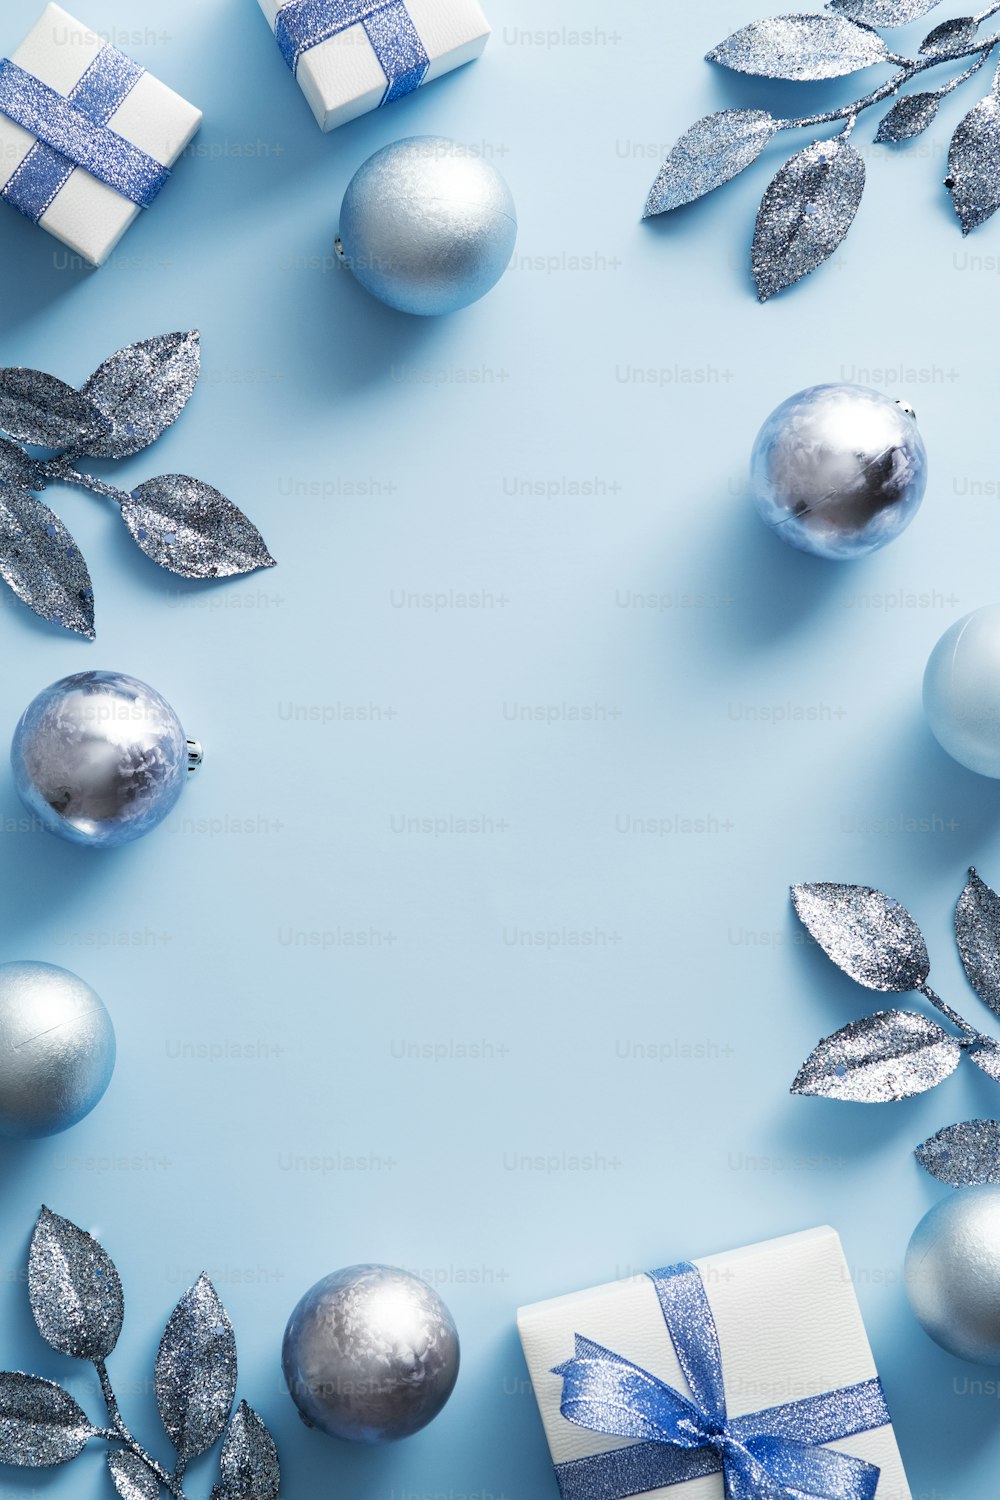 Marco navideño con decoraciones modernas, bolas, cajas de regalo sobre fondo azul. Diseño de cartel de Navidad, maqueta de invitación a la fiesta de Año Nuevo.